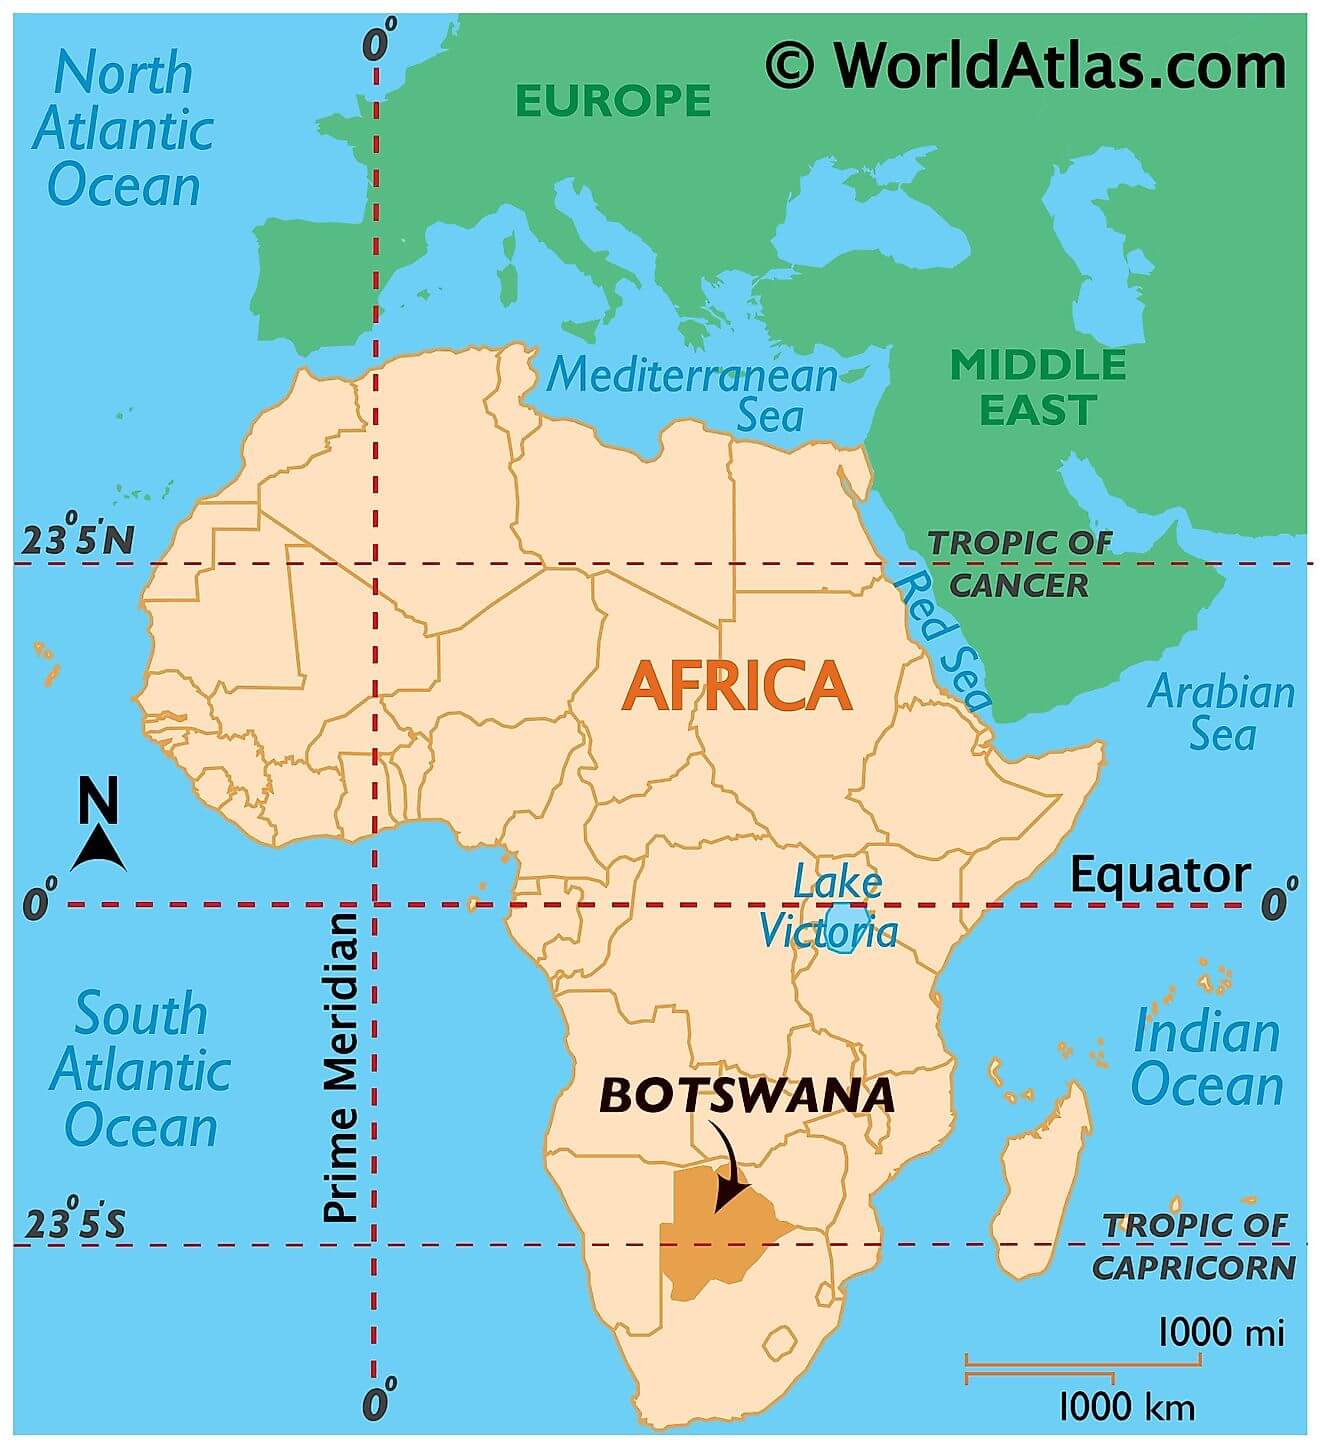 Botswana ở đâu?